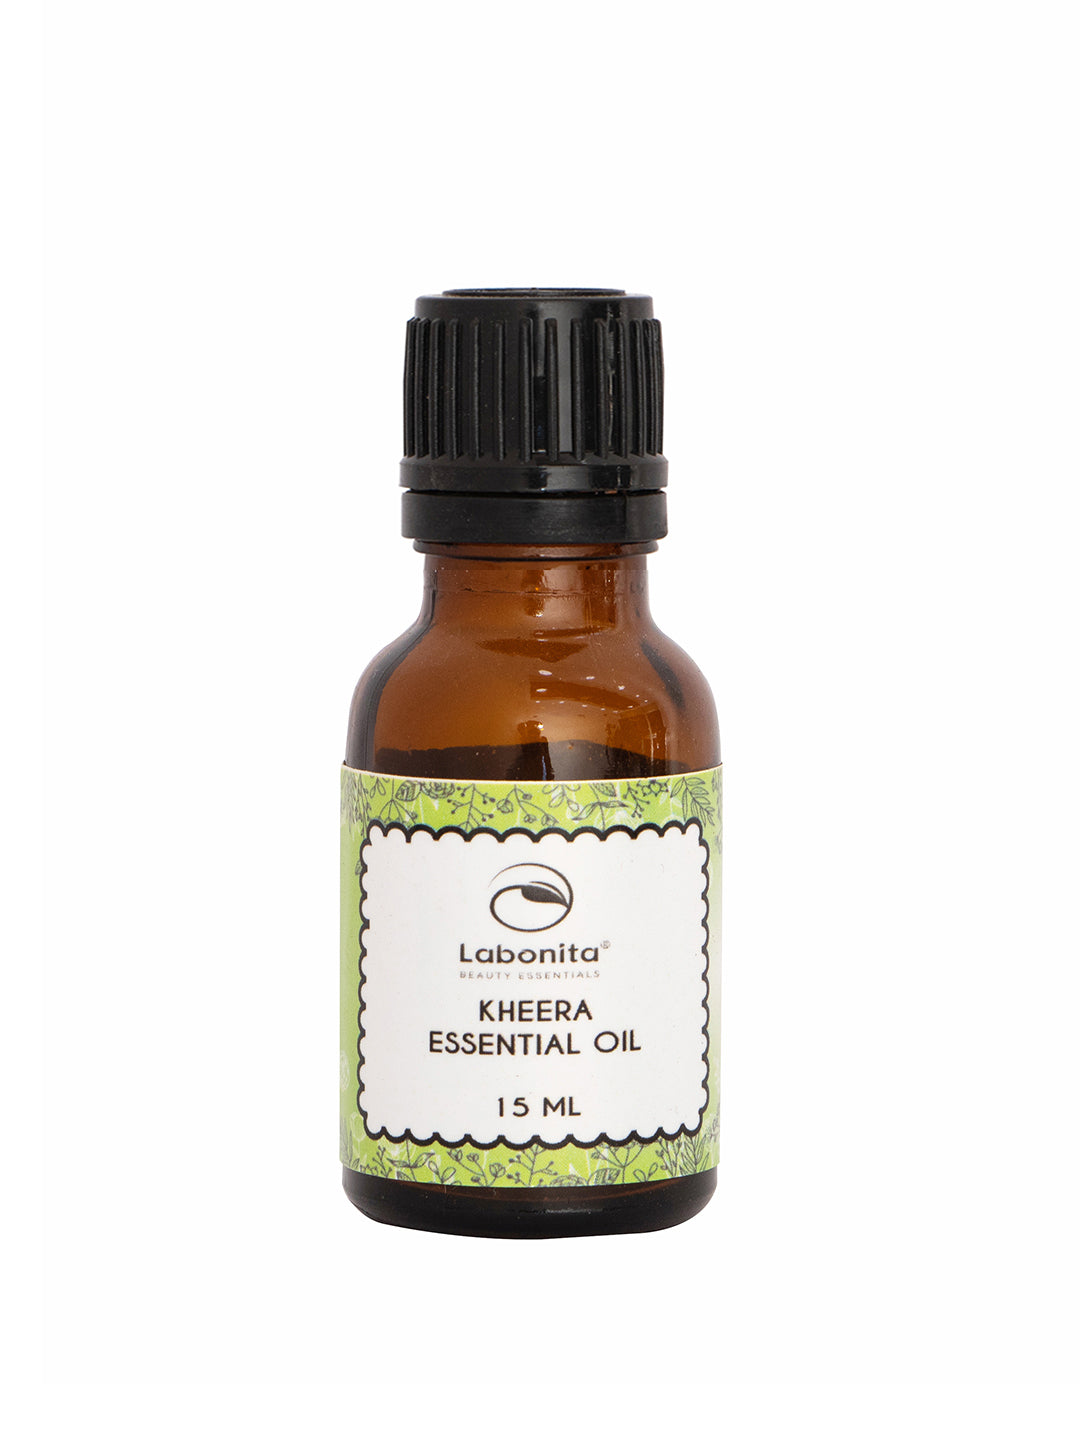 Kheera Essential Oil